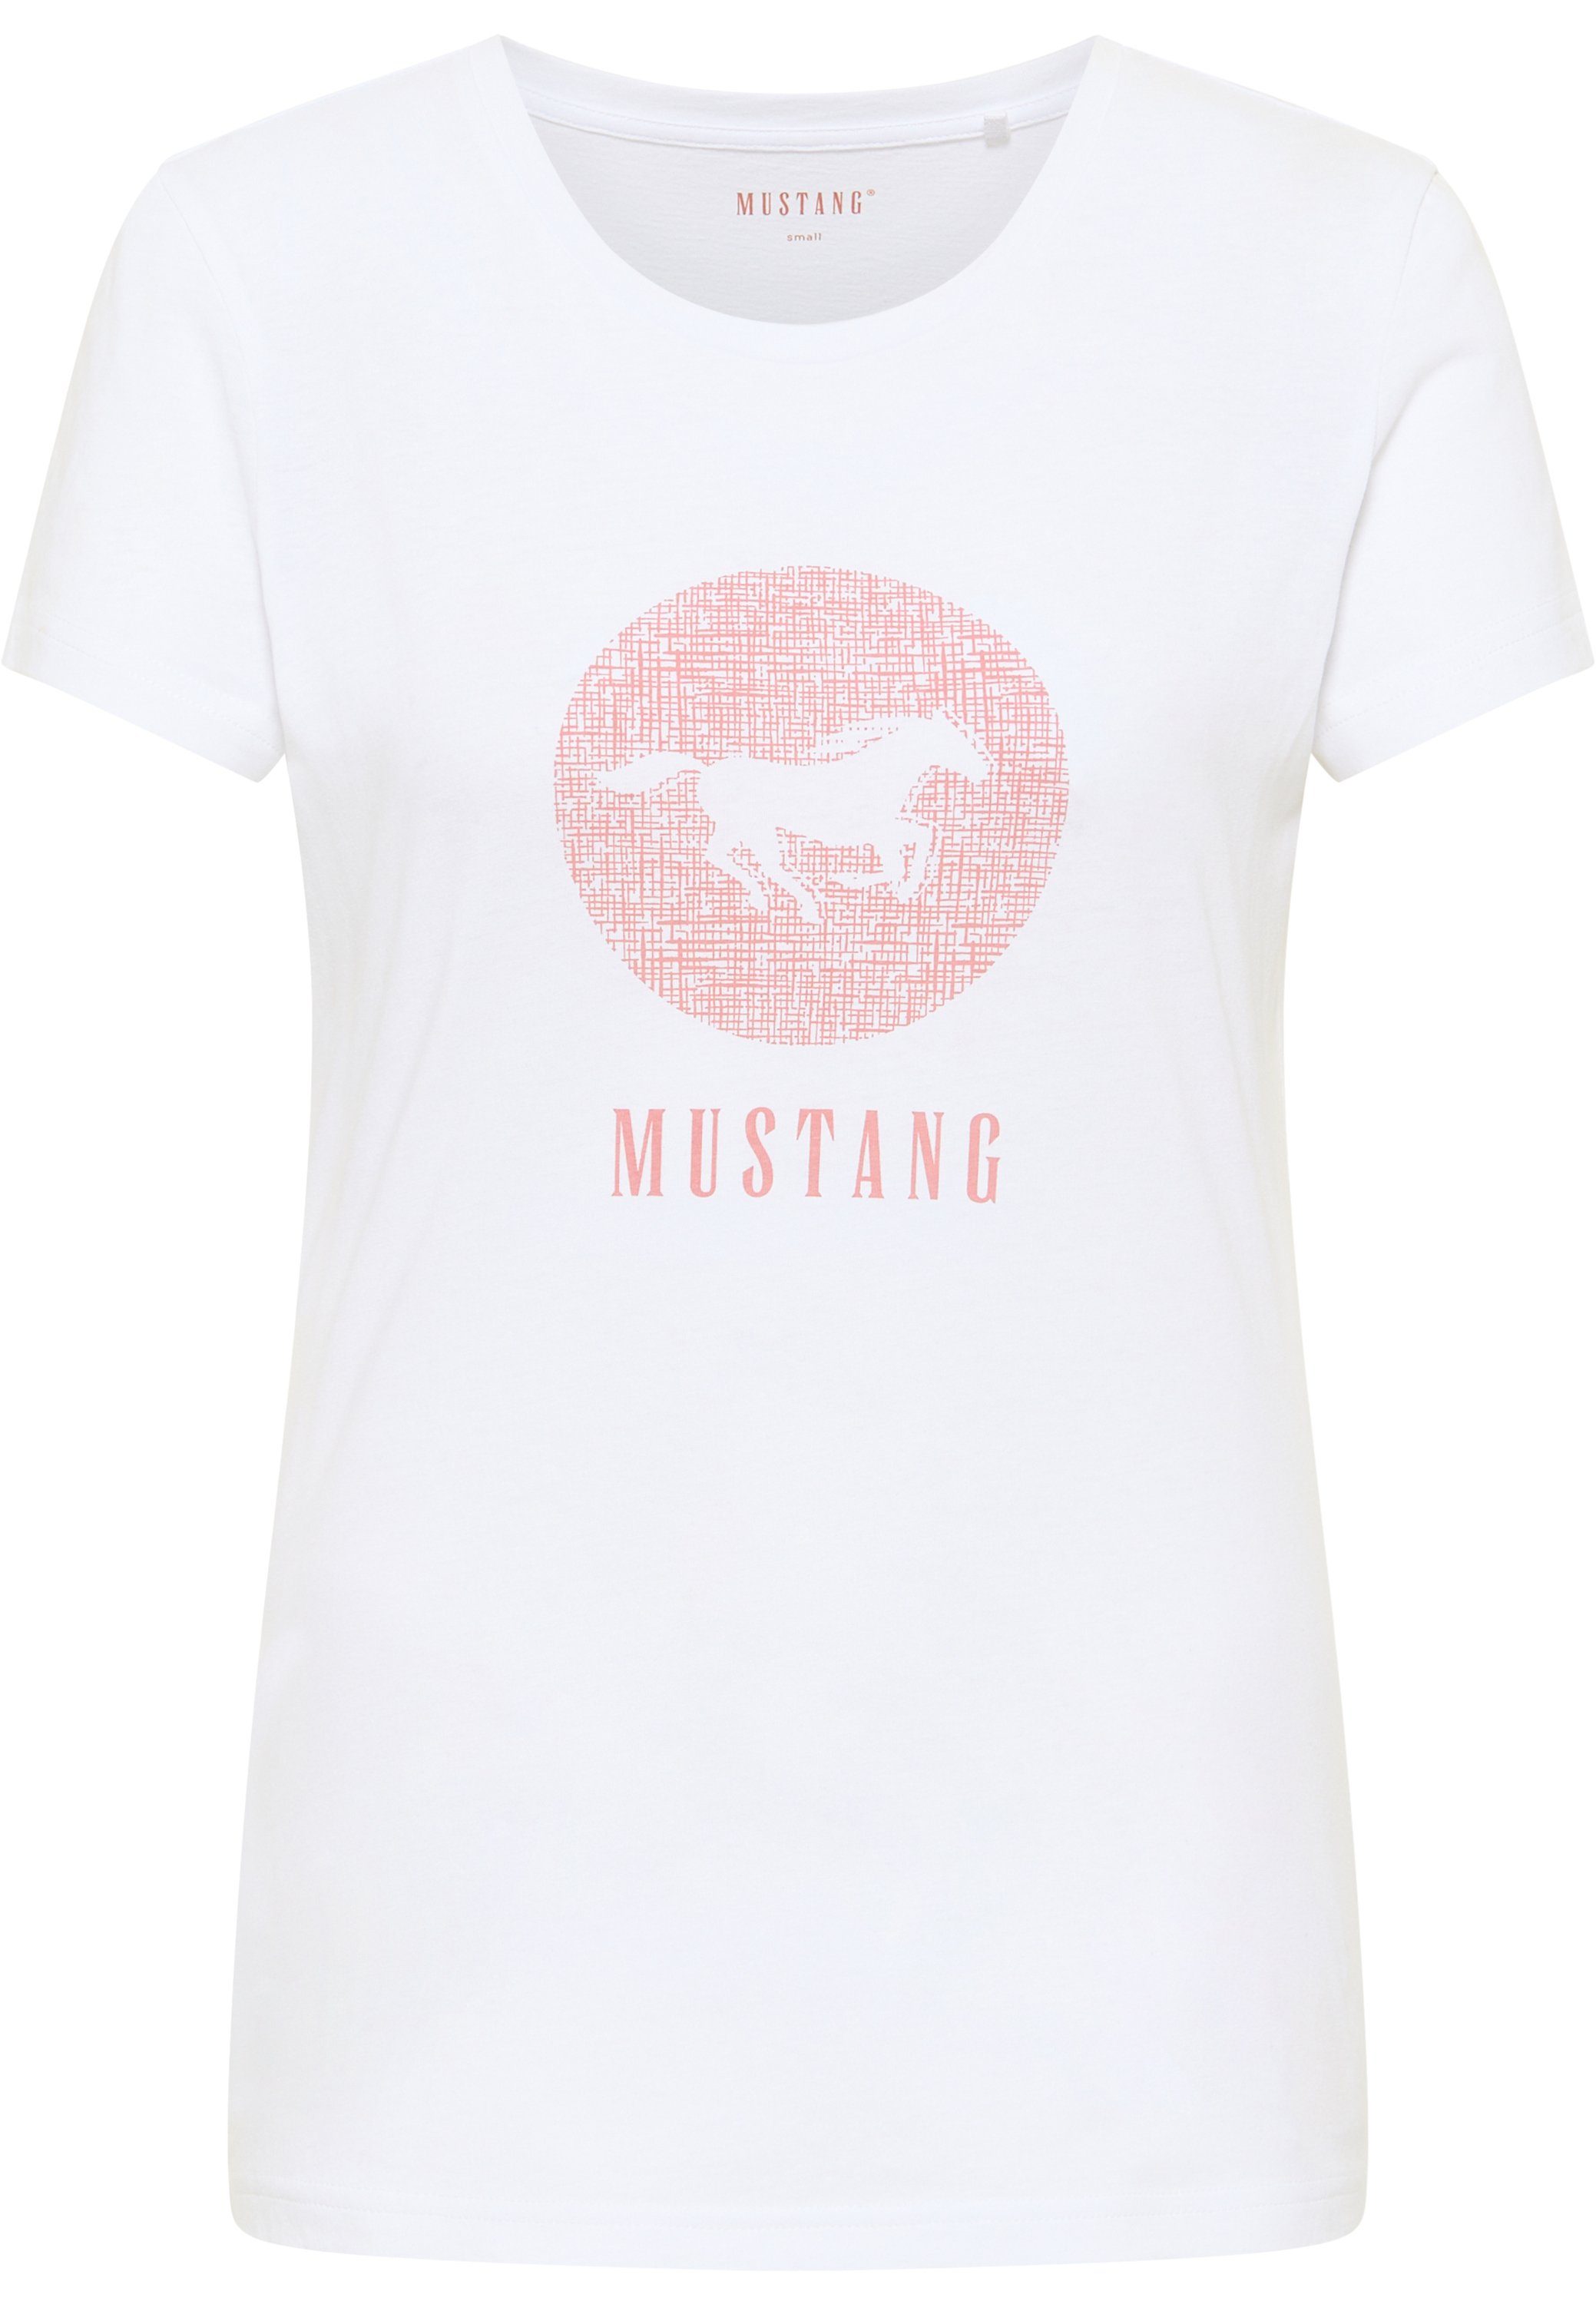 Print-Shirt Mustang MUSTANG T-Shirt weiß Kurzarmshirt